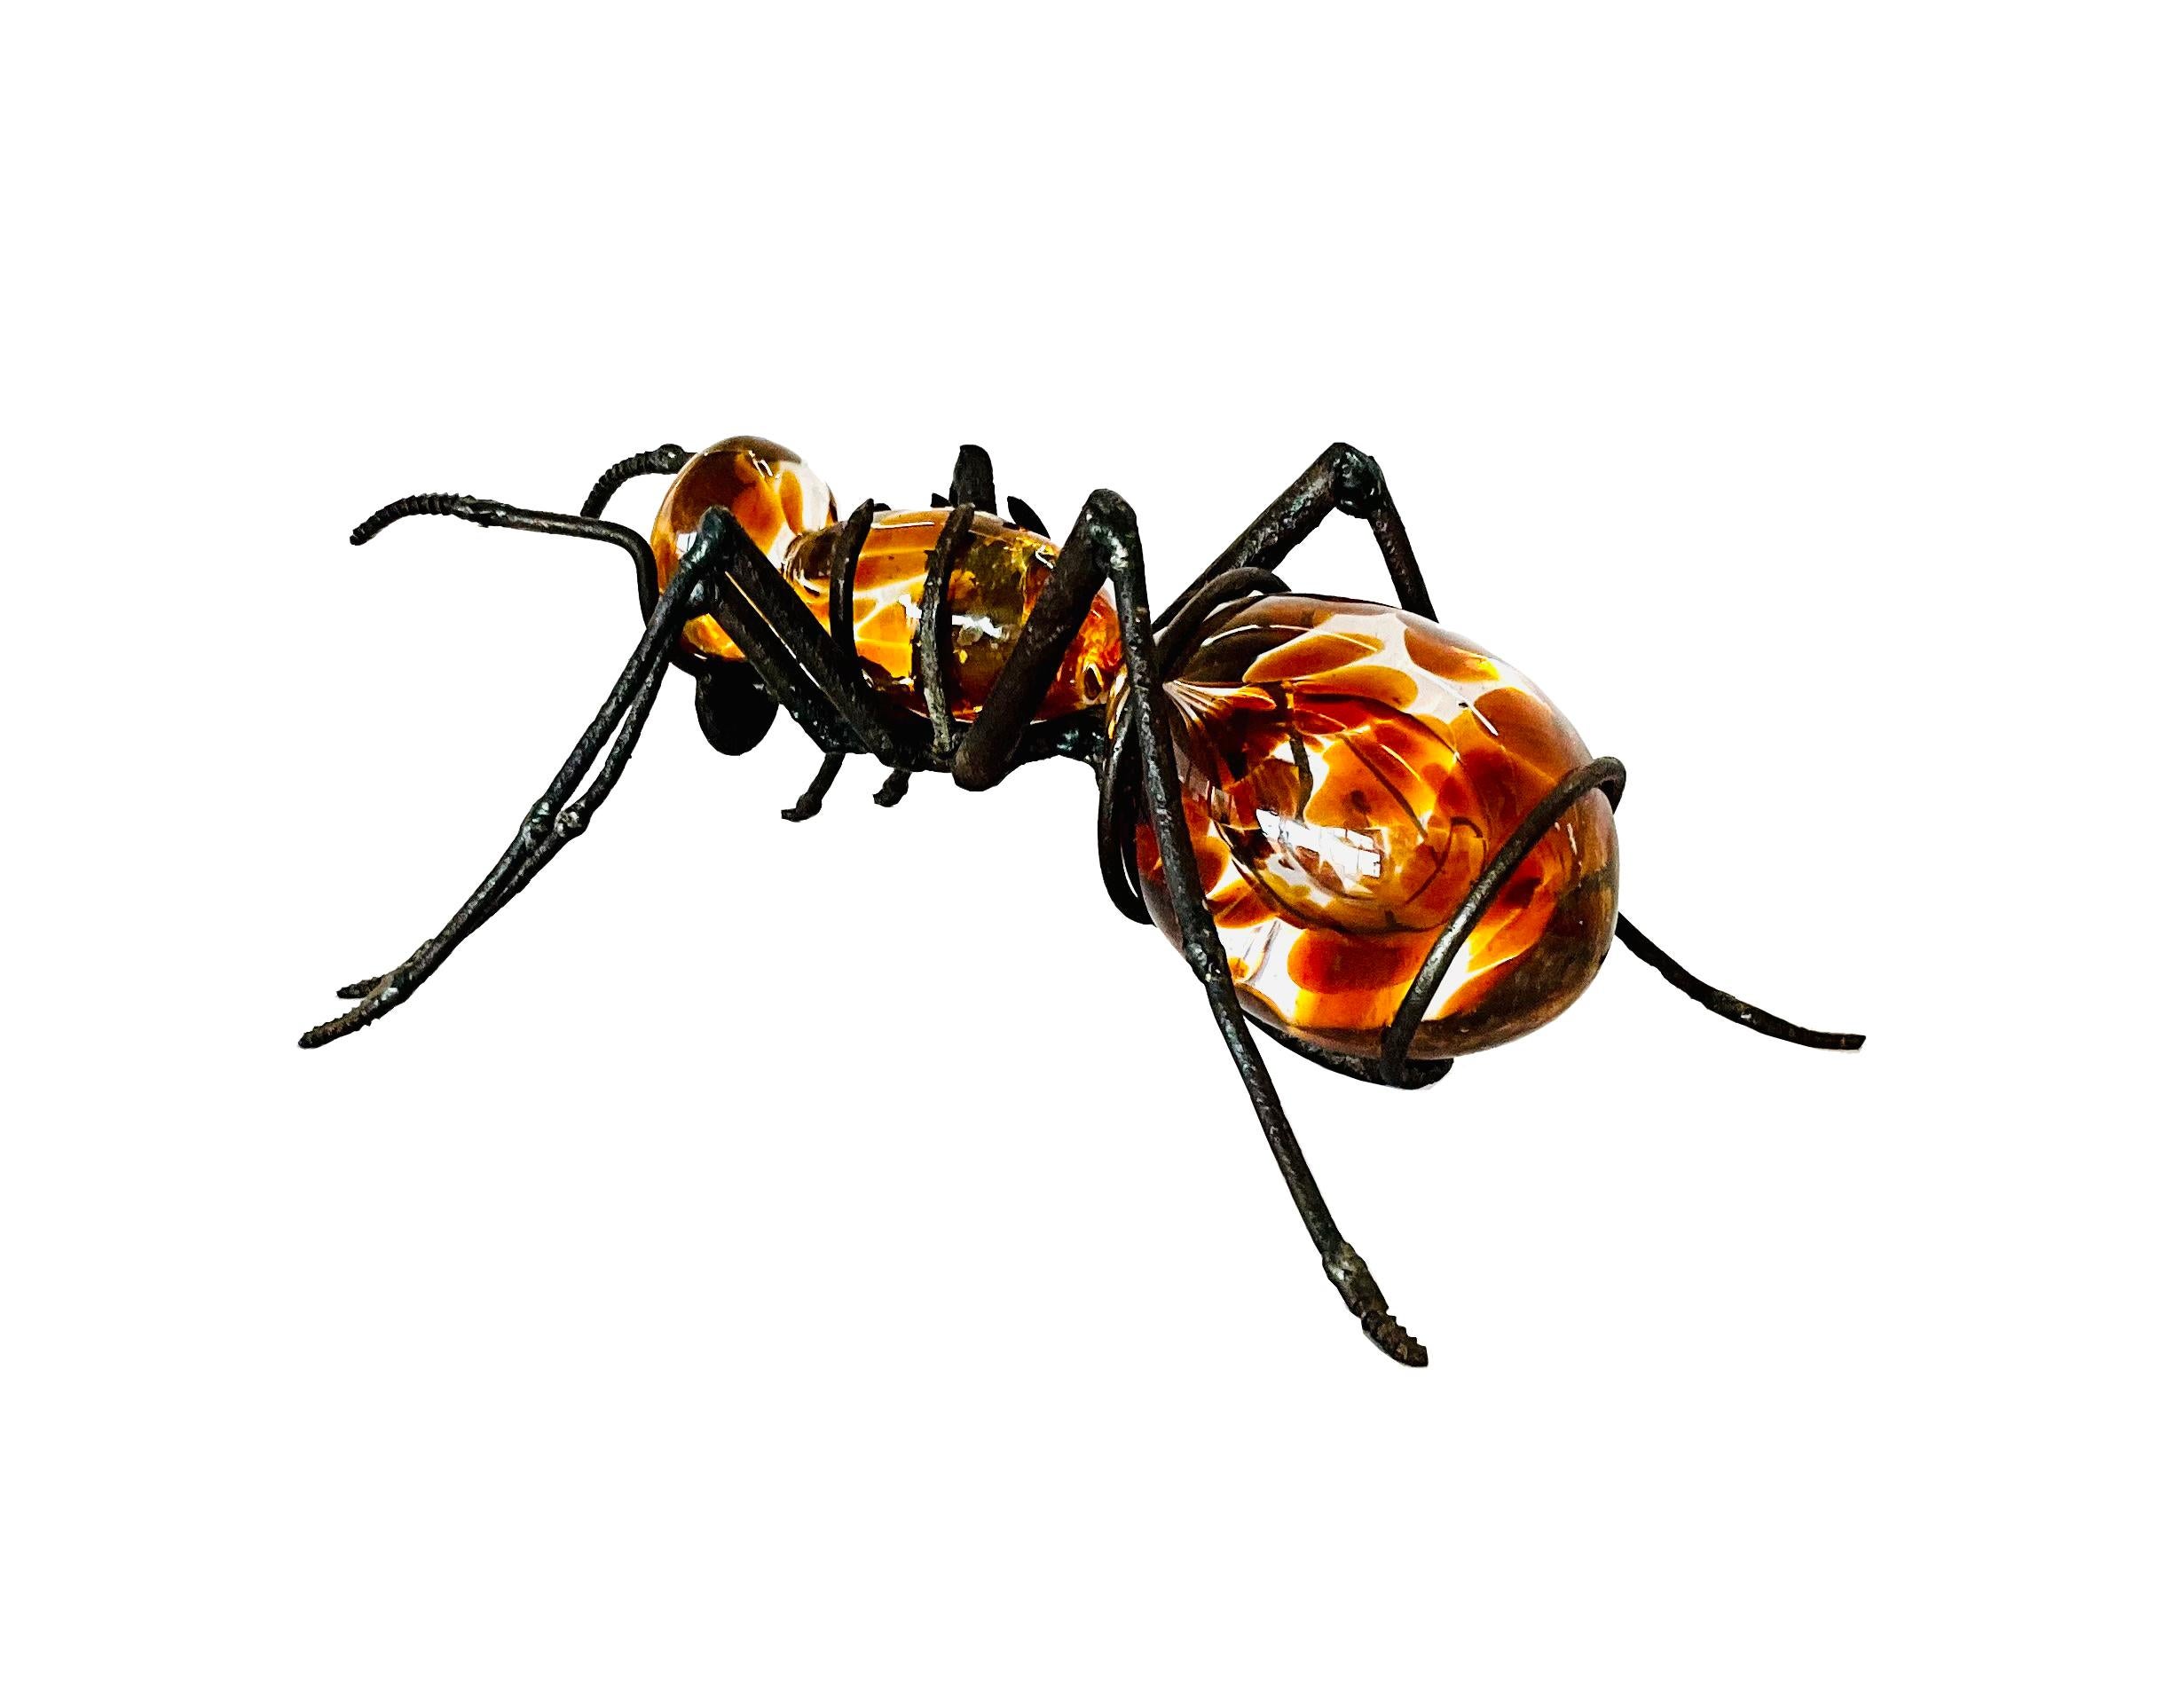 La fourmi, marron foncé

La sculpture de Marcos Romero, représentant une fourmi faite de fer industriel recyclé et de verre soufflé, est une œuvre d'art contemporain fascinante. Romero a créé une pièce qui combine la dureté et la résistance du métal